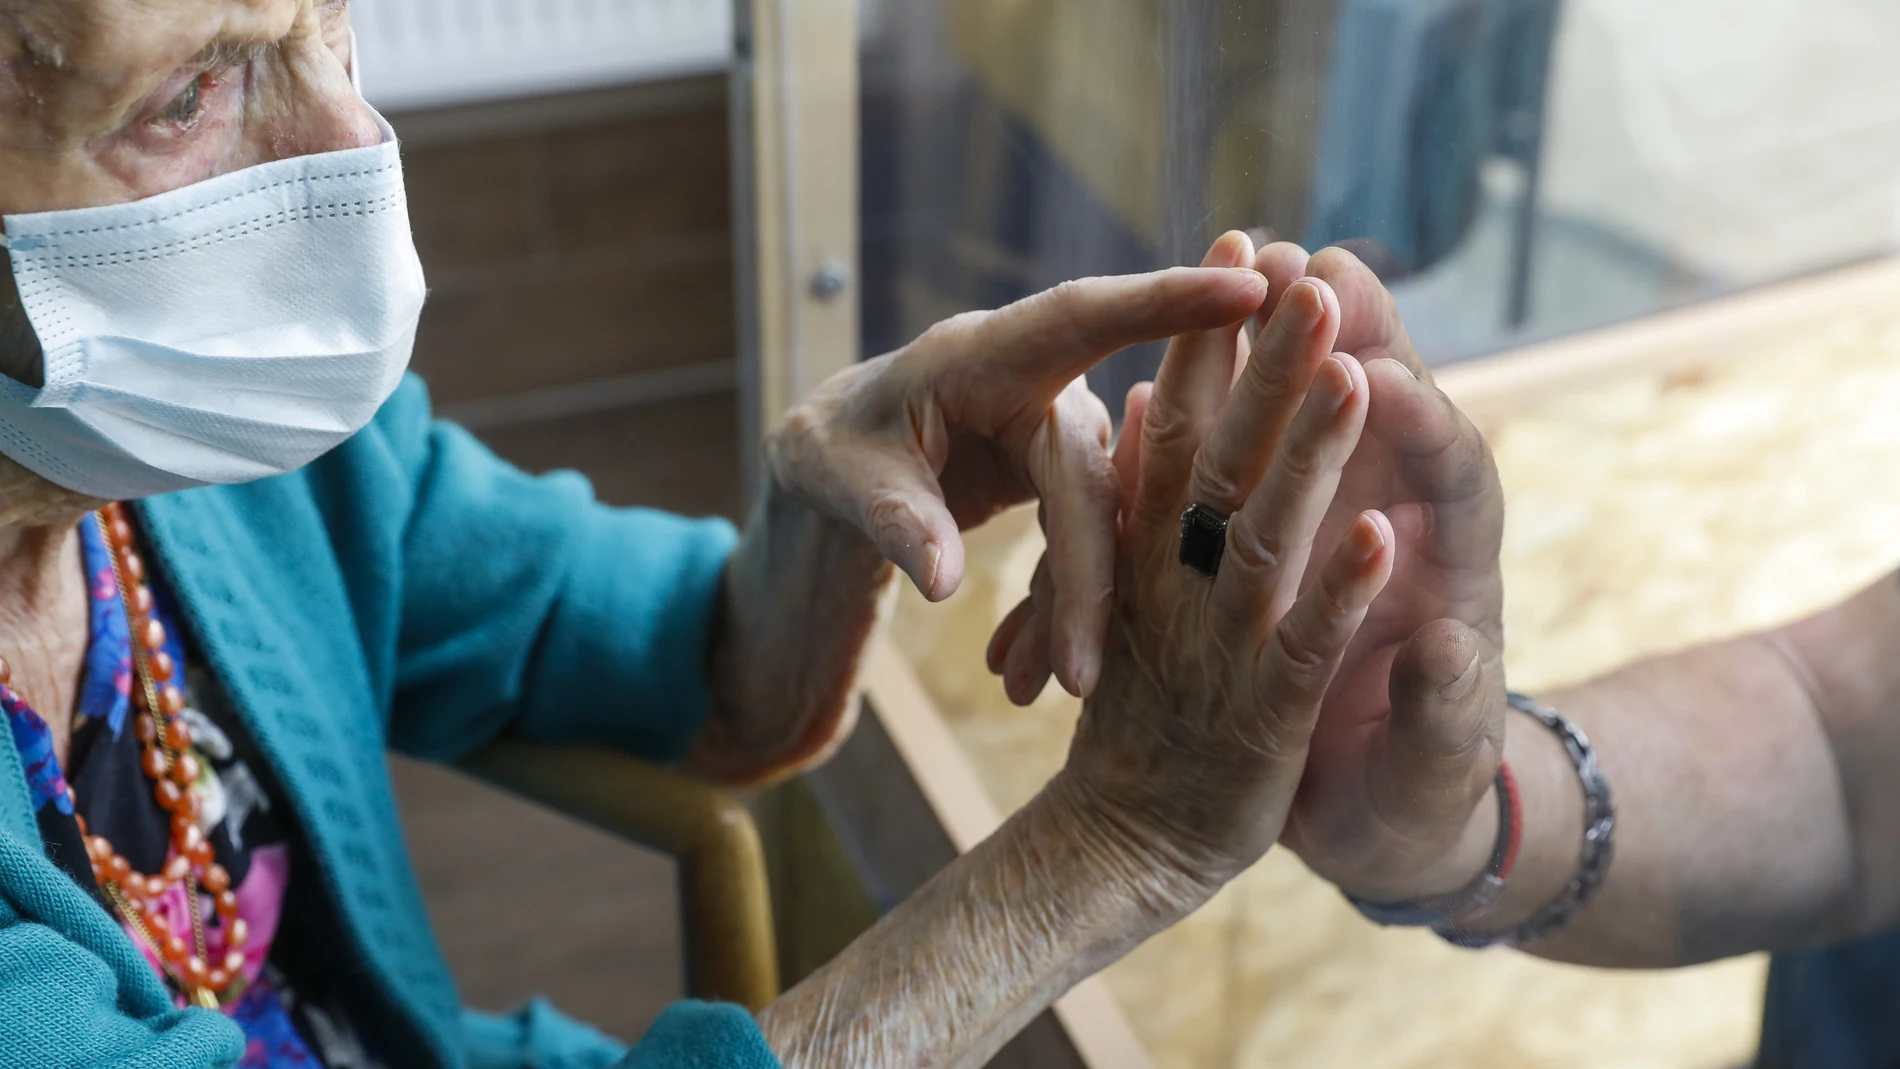 La pandemia ha puesto de manifiesto las carencias sanitarias de las residencias de mayores